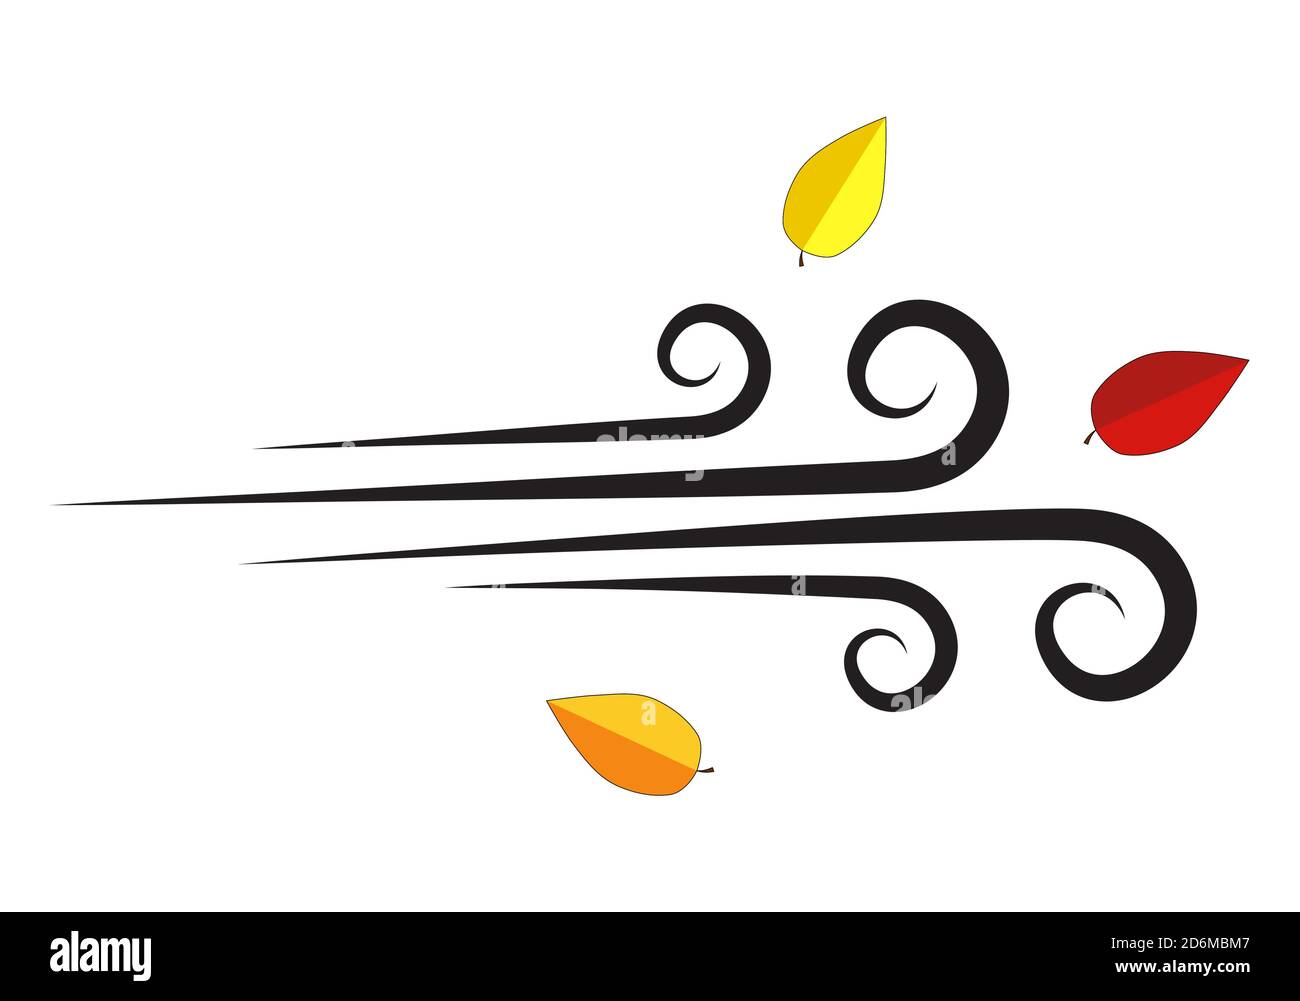 L'automne vole des feuilles sur l'icône du vent. Air soufflé avec feuille isolée sur blanc. Illustration vectorielle d'un tourbillon venteux. Symbole du temps automnal. Résumé s Illustration de Vecteur